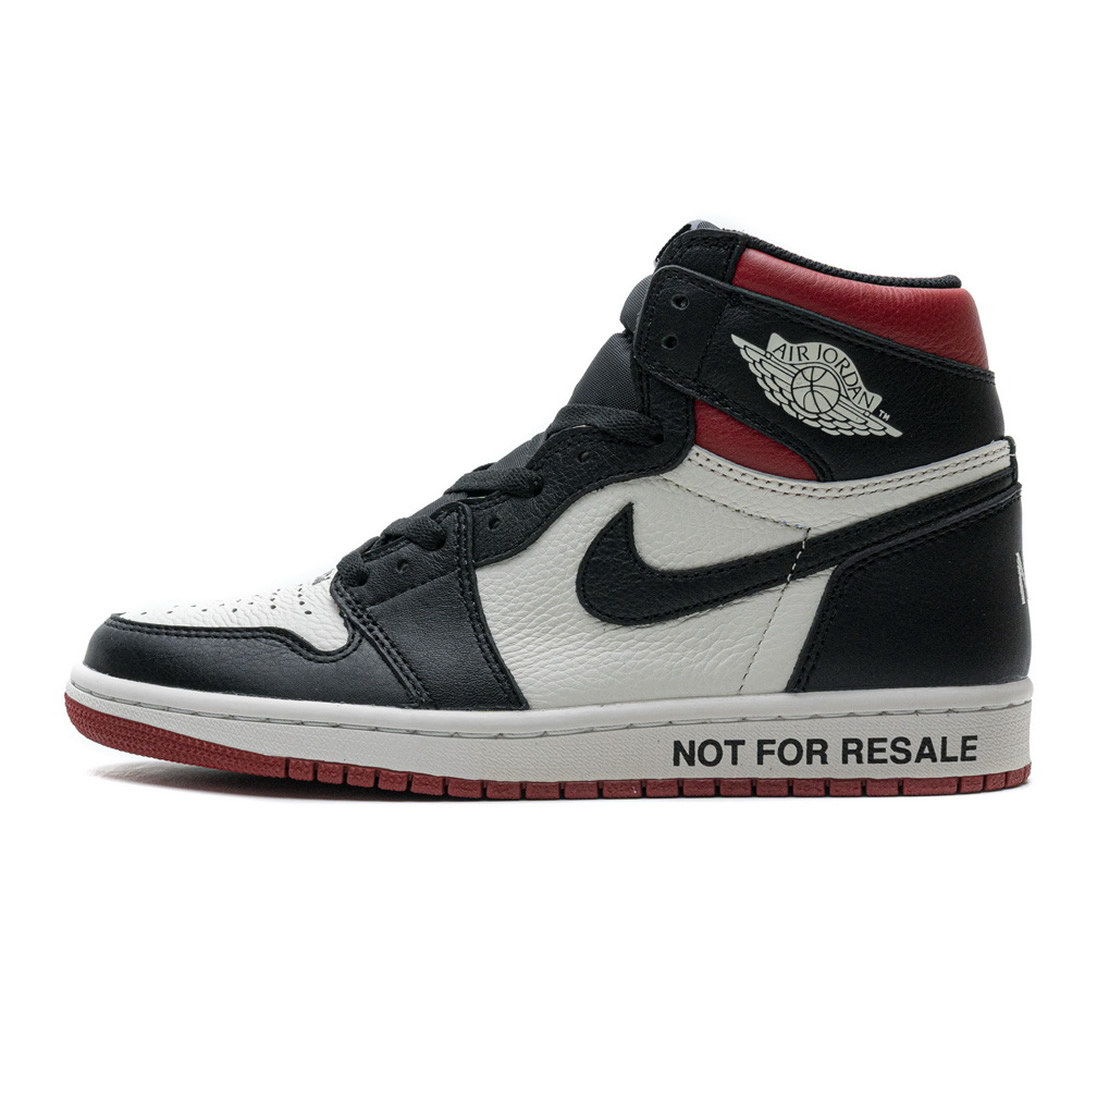 Nike 861428 106 Air Jordan 1 Nrg Og High Not For Resale Varsity Red 1 - www.kickbulk.co